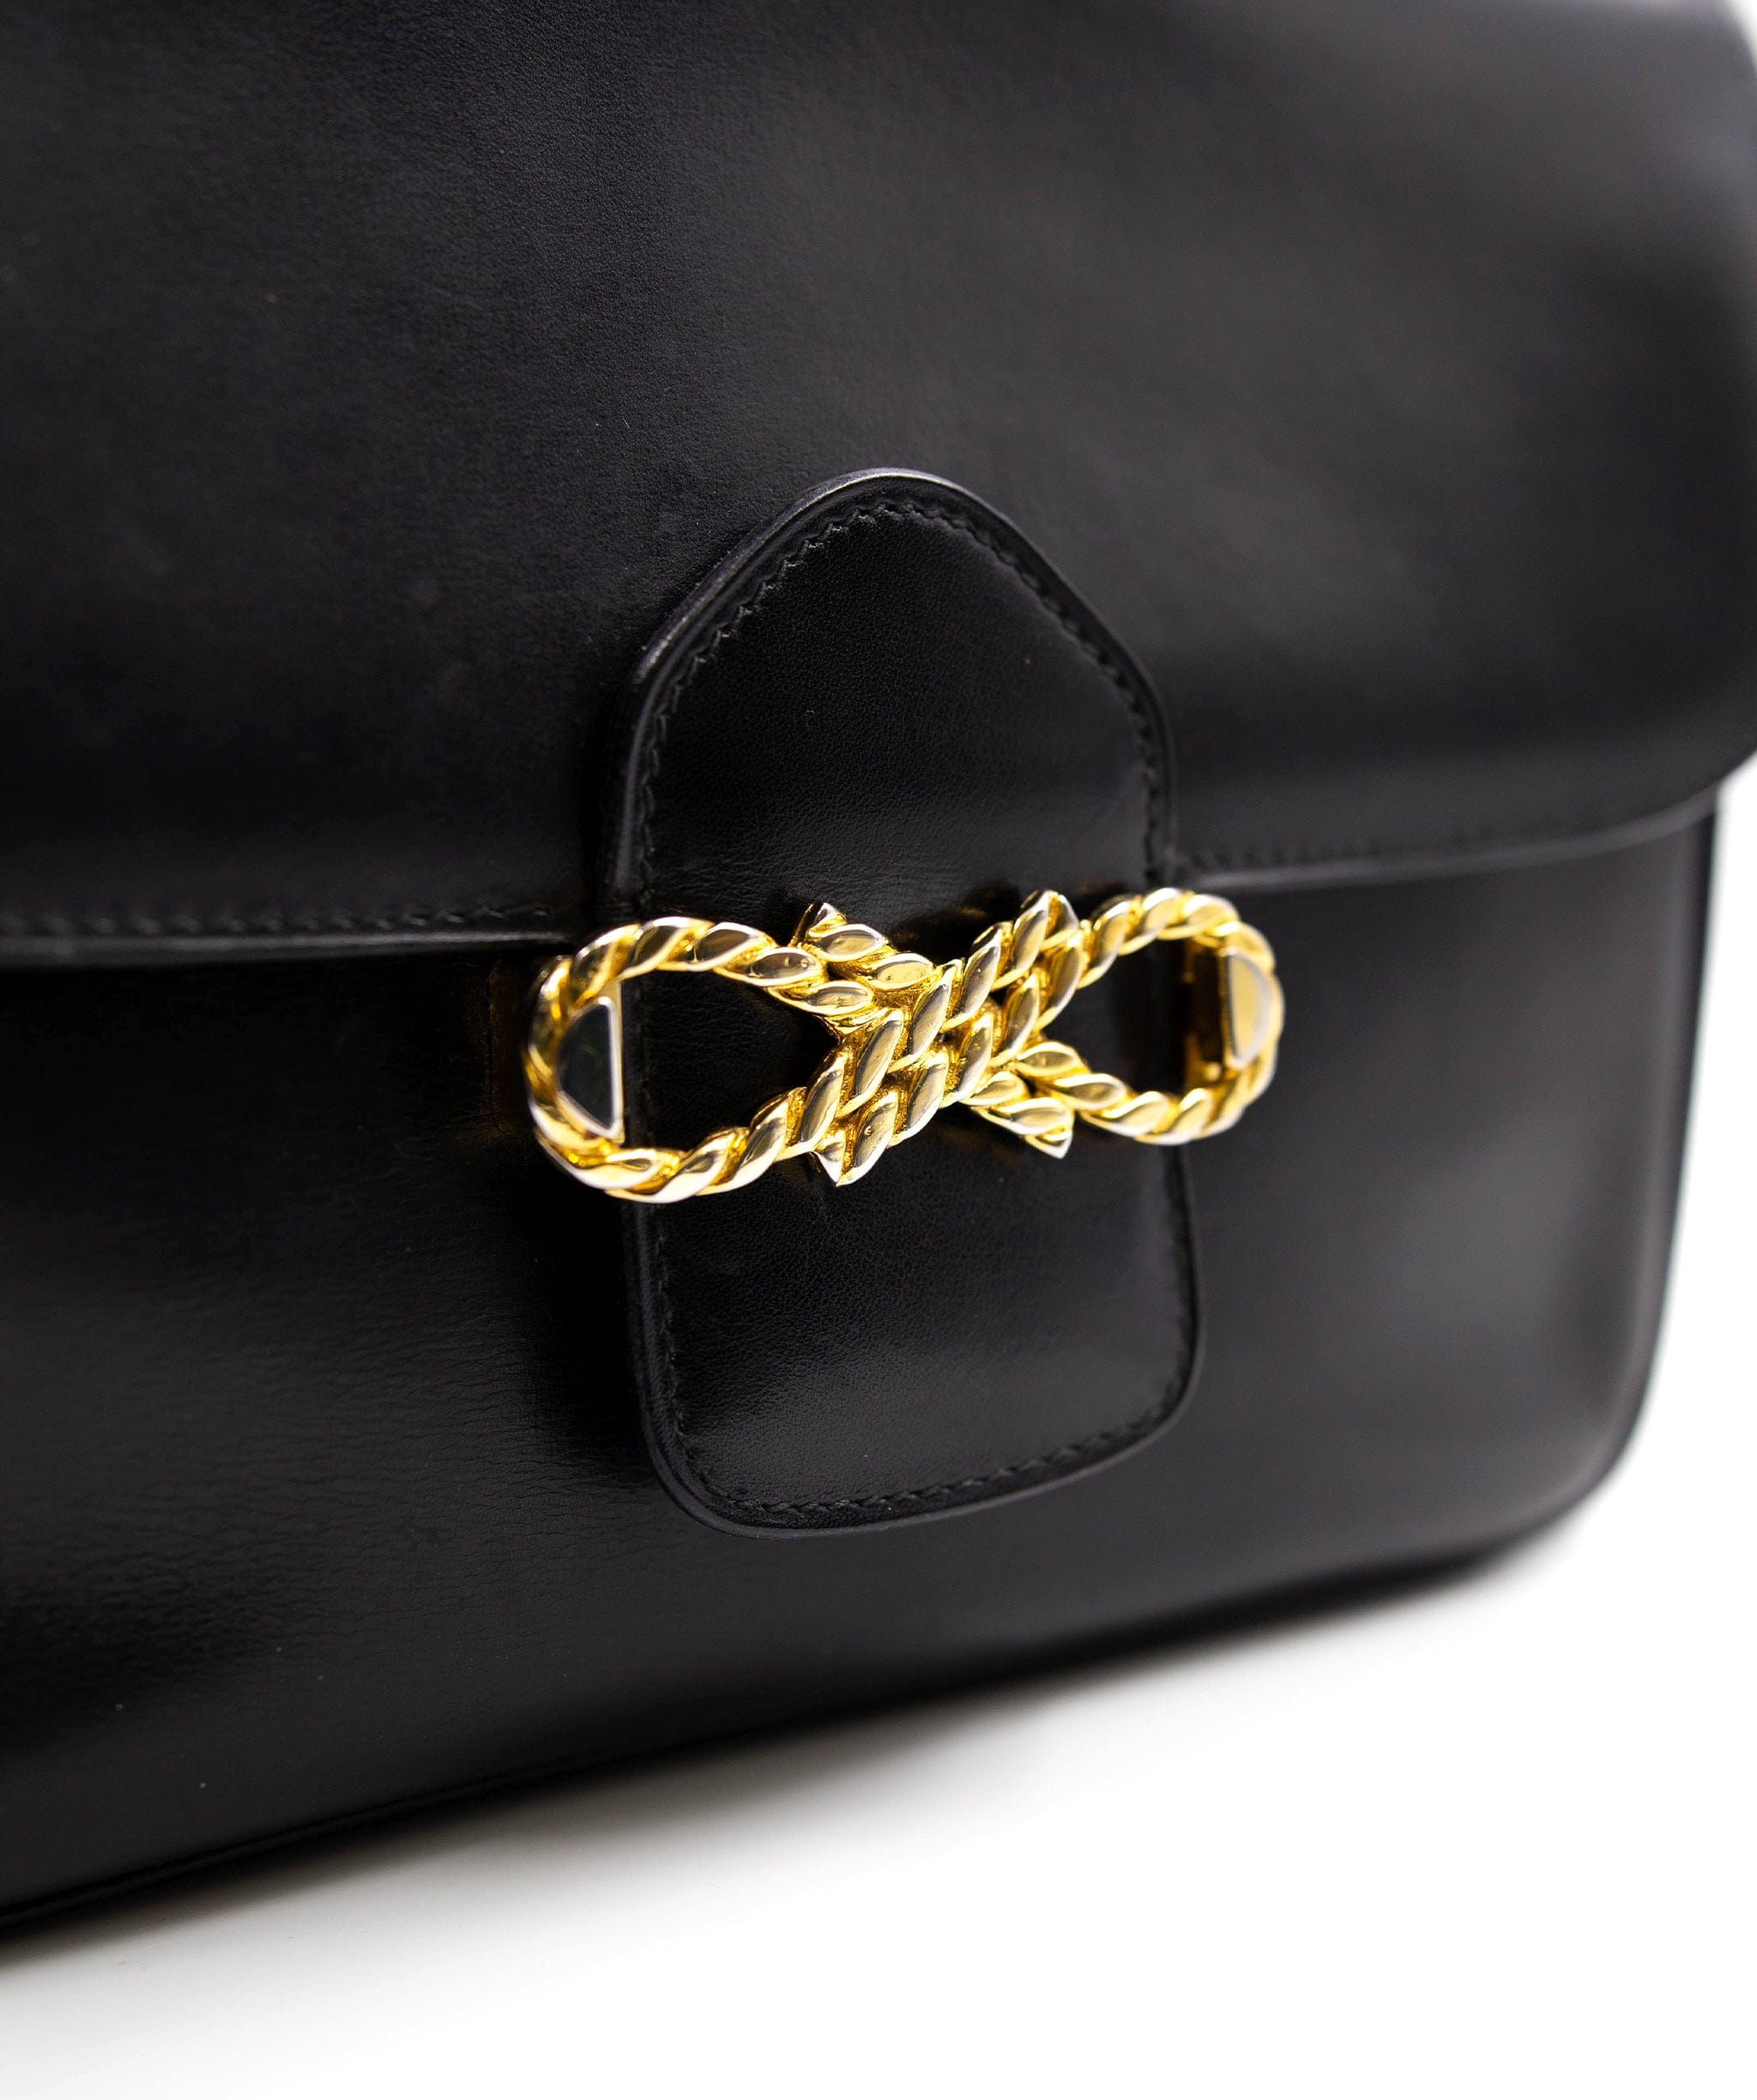 Chanel Celine Vintage Box bag - AWL3535